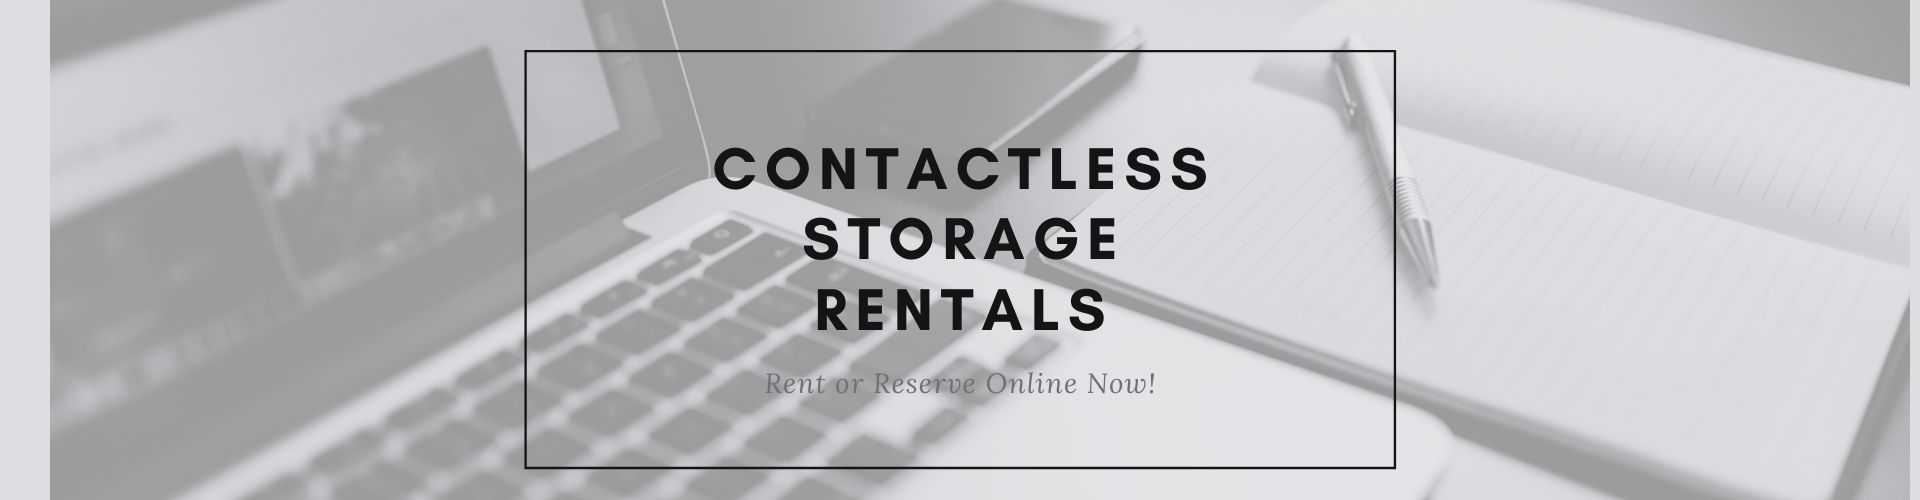 Contactless Storage Rentals in Toledo OH